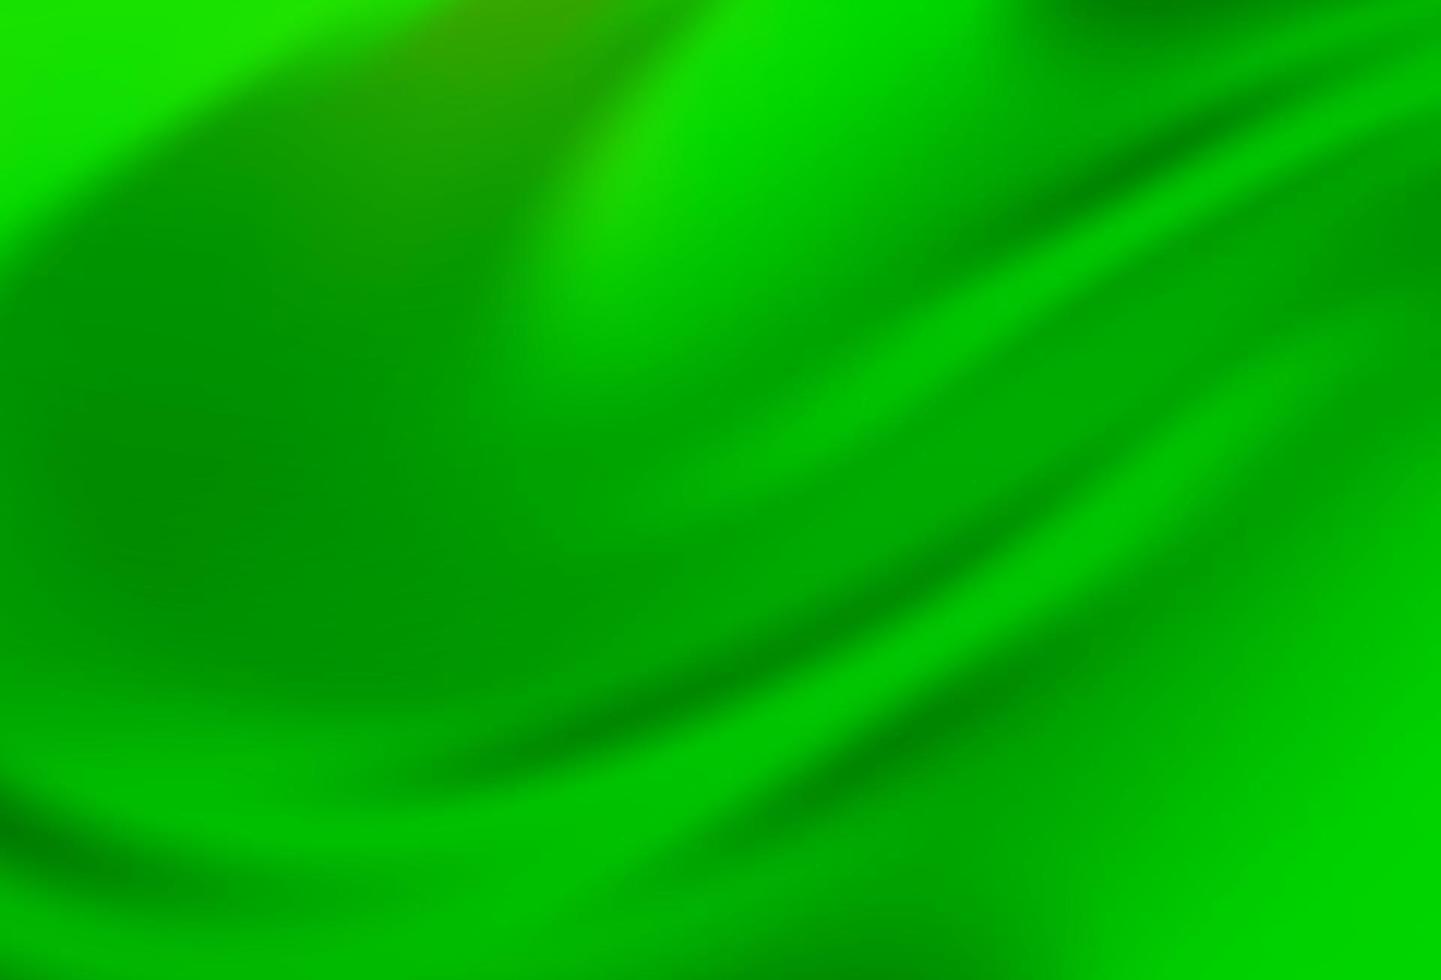 struttura luminosa astratta di vettore verde chiaro.